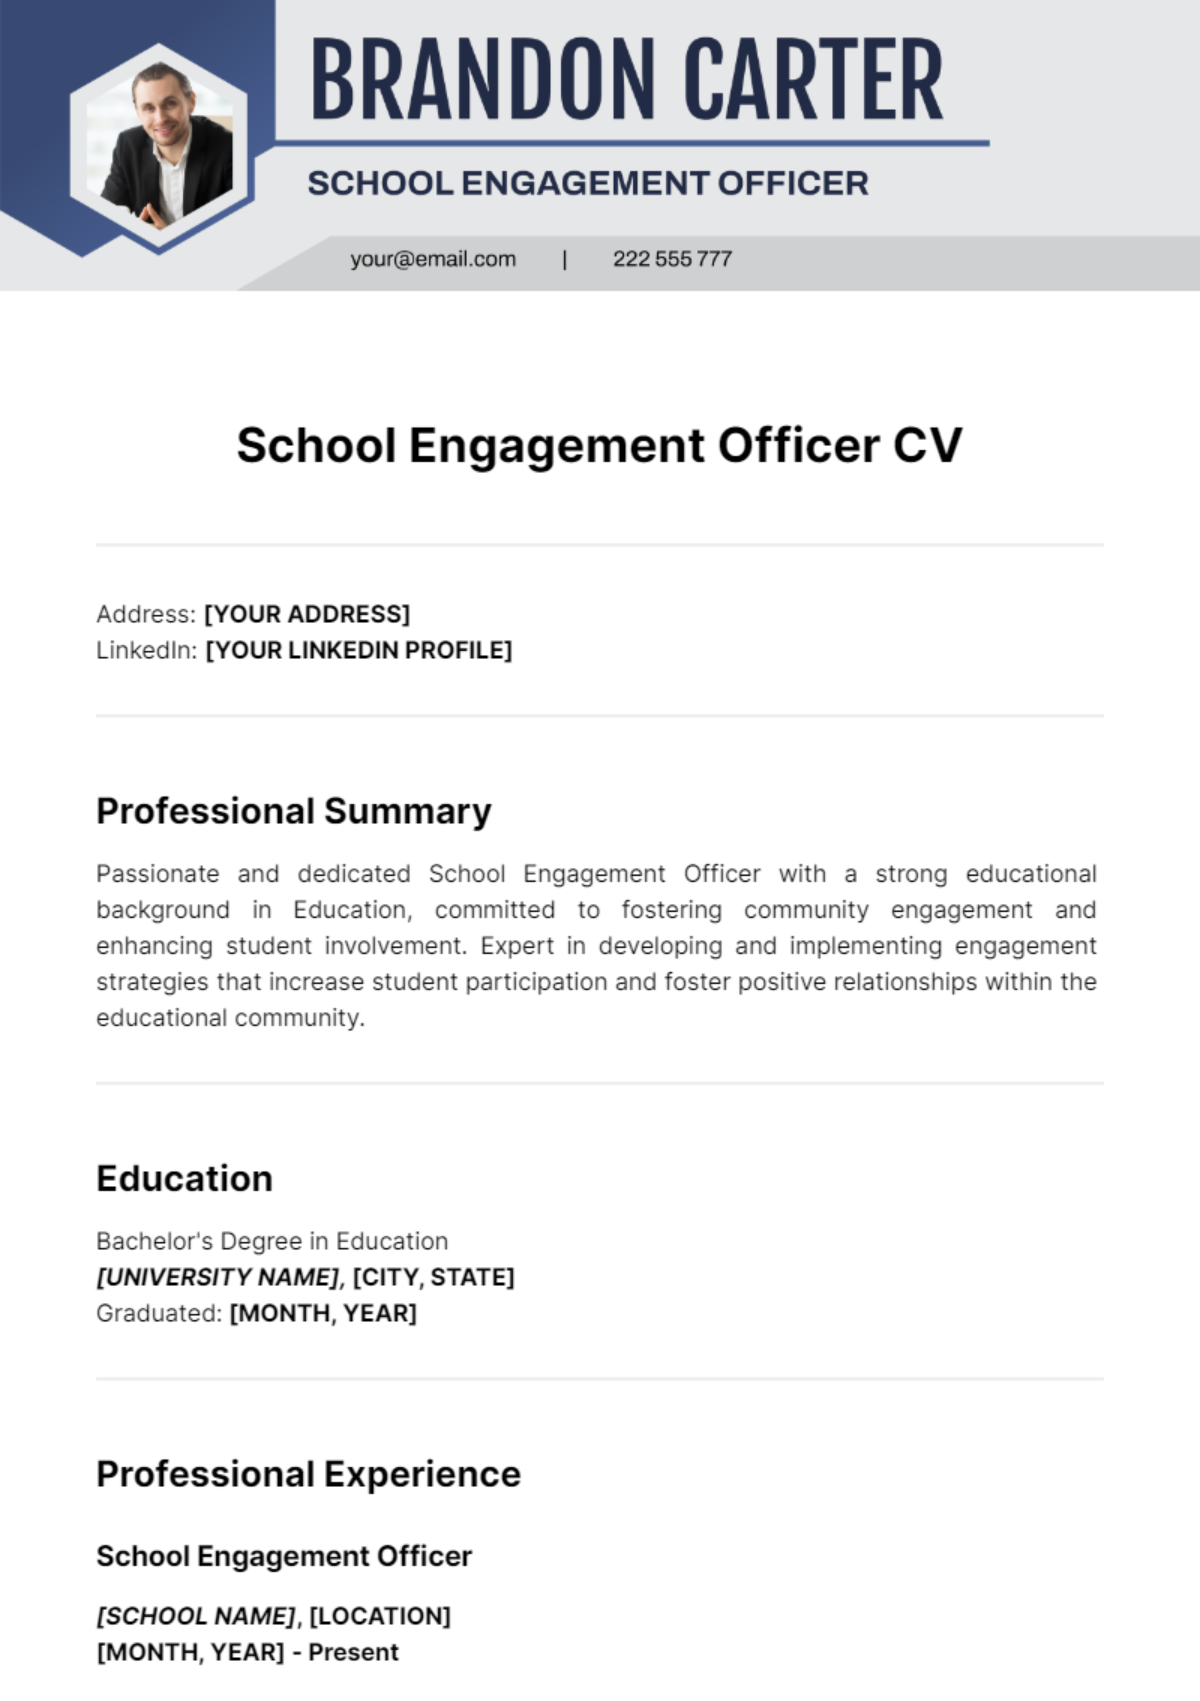 School Engagement Officer CV Template